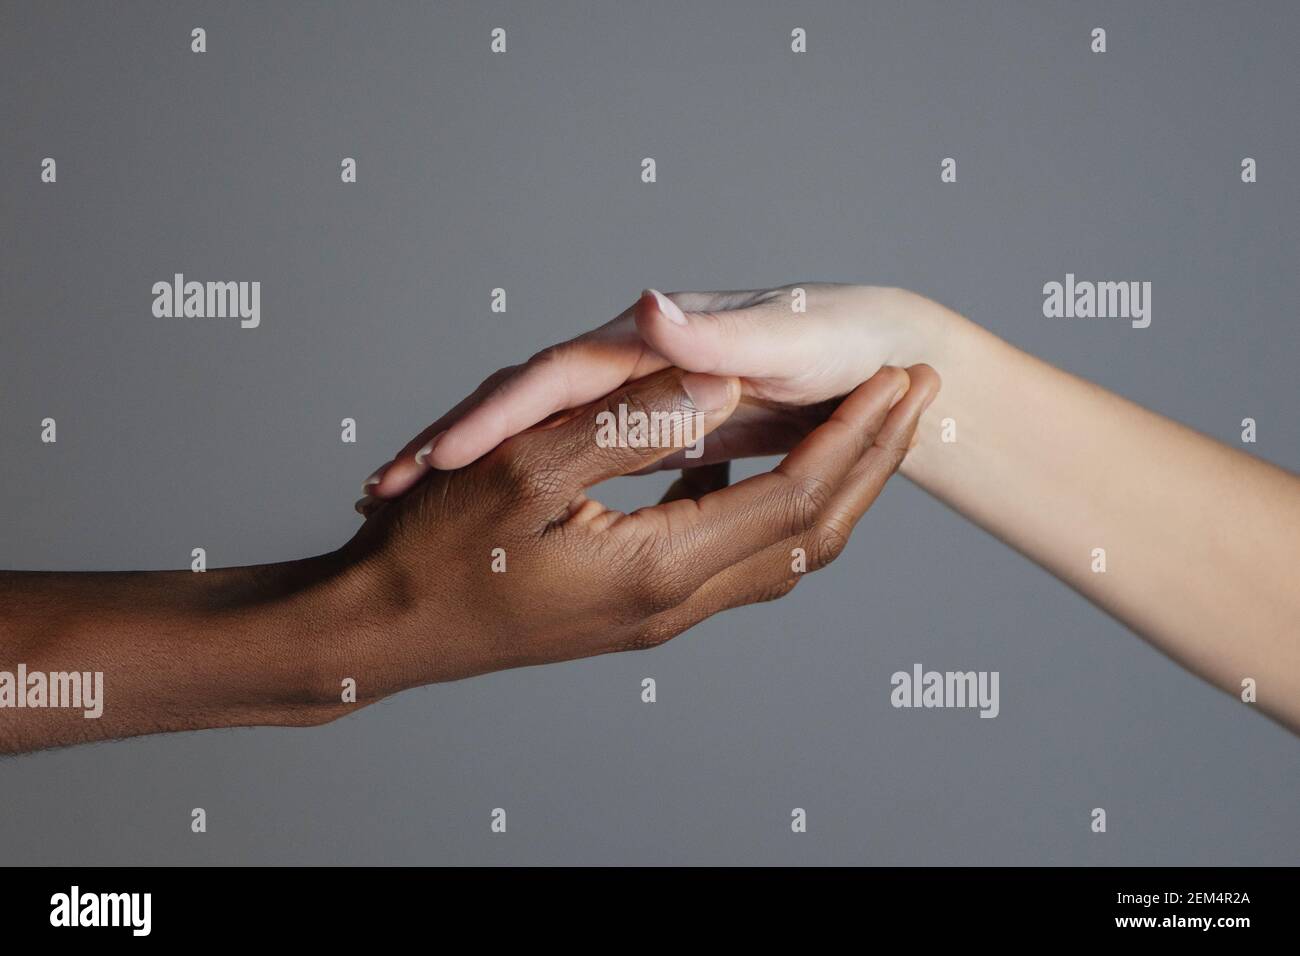 Die schwarze Hand hält die weiße Hand in ihrer Handfläche. Kampf gegen Rassismus Konzept. Stockfoto